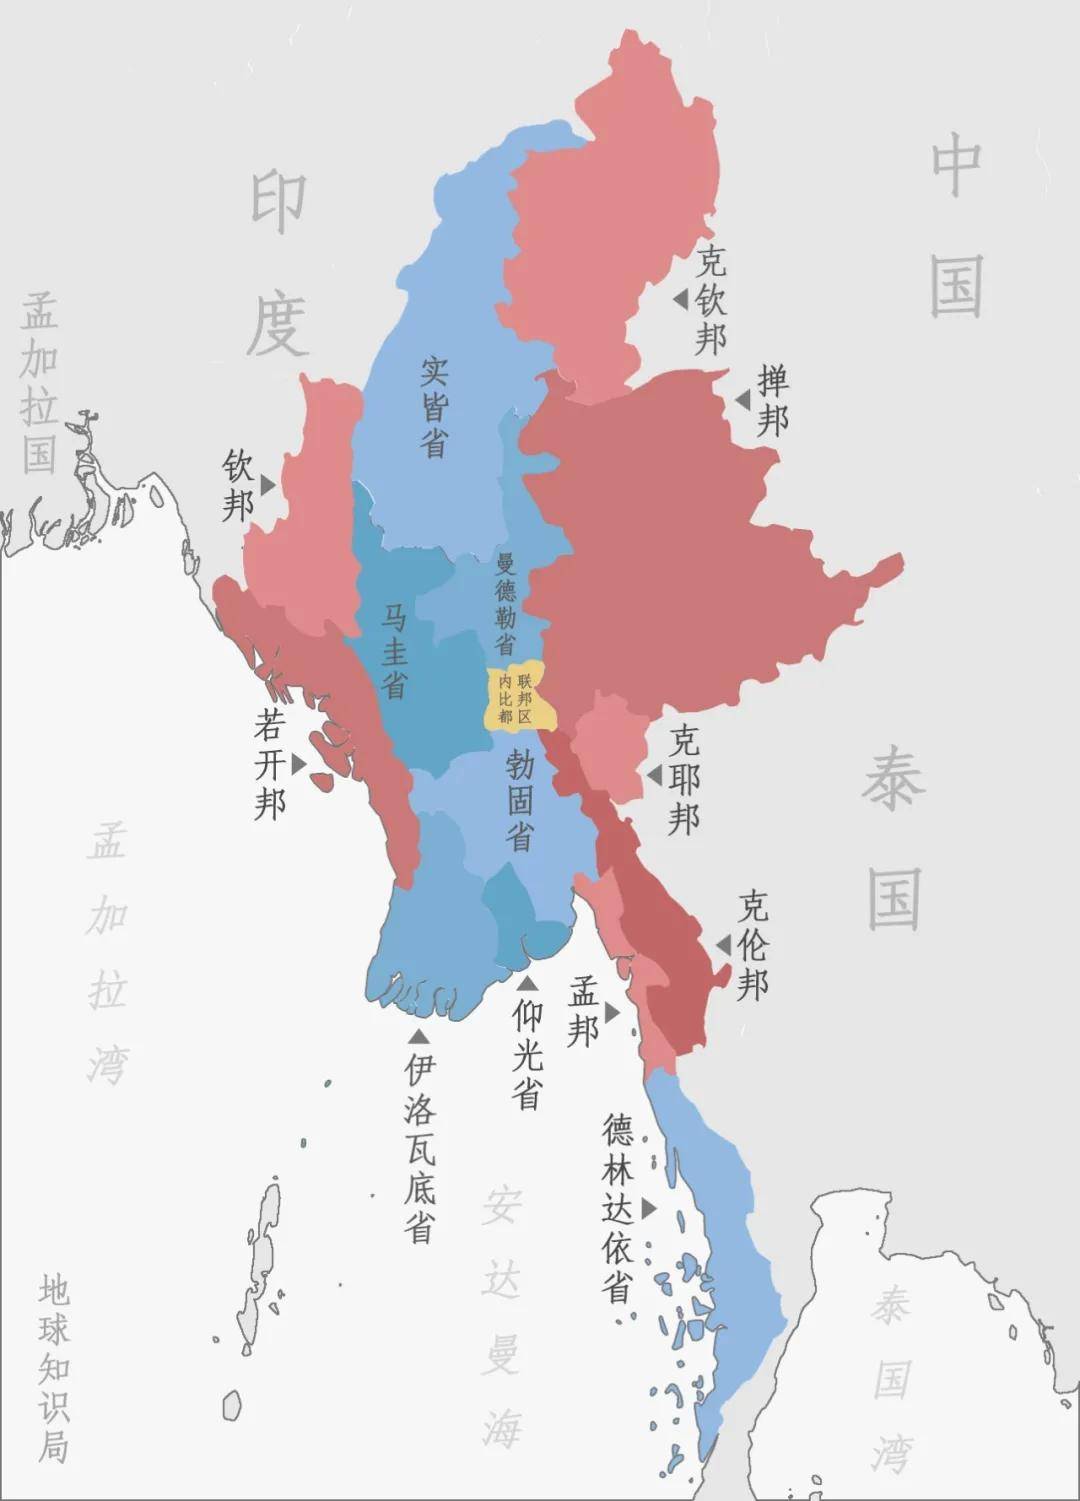 对应到缅甸的行政区划上,就是伊洛瓦底江干流两岸的六个